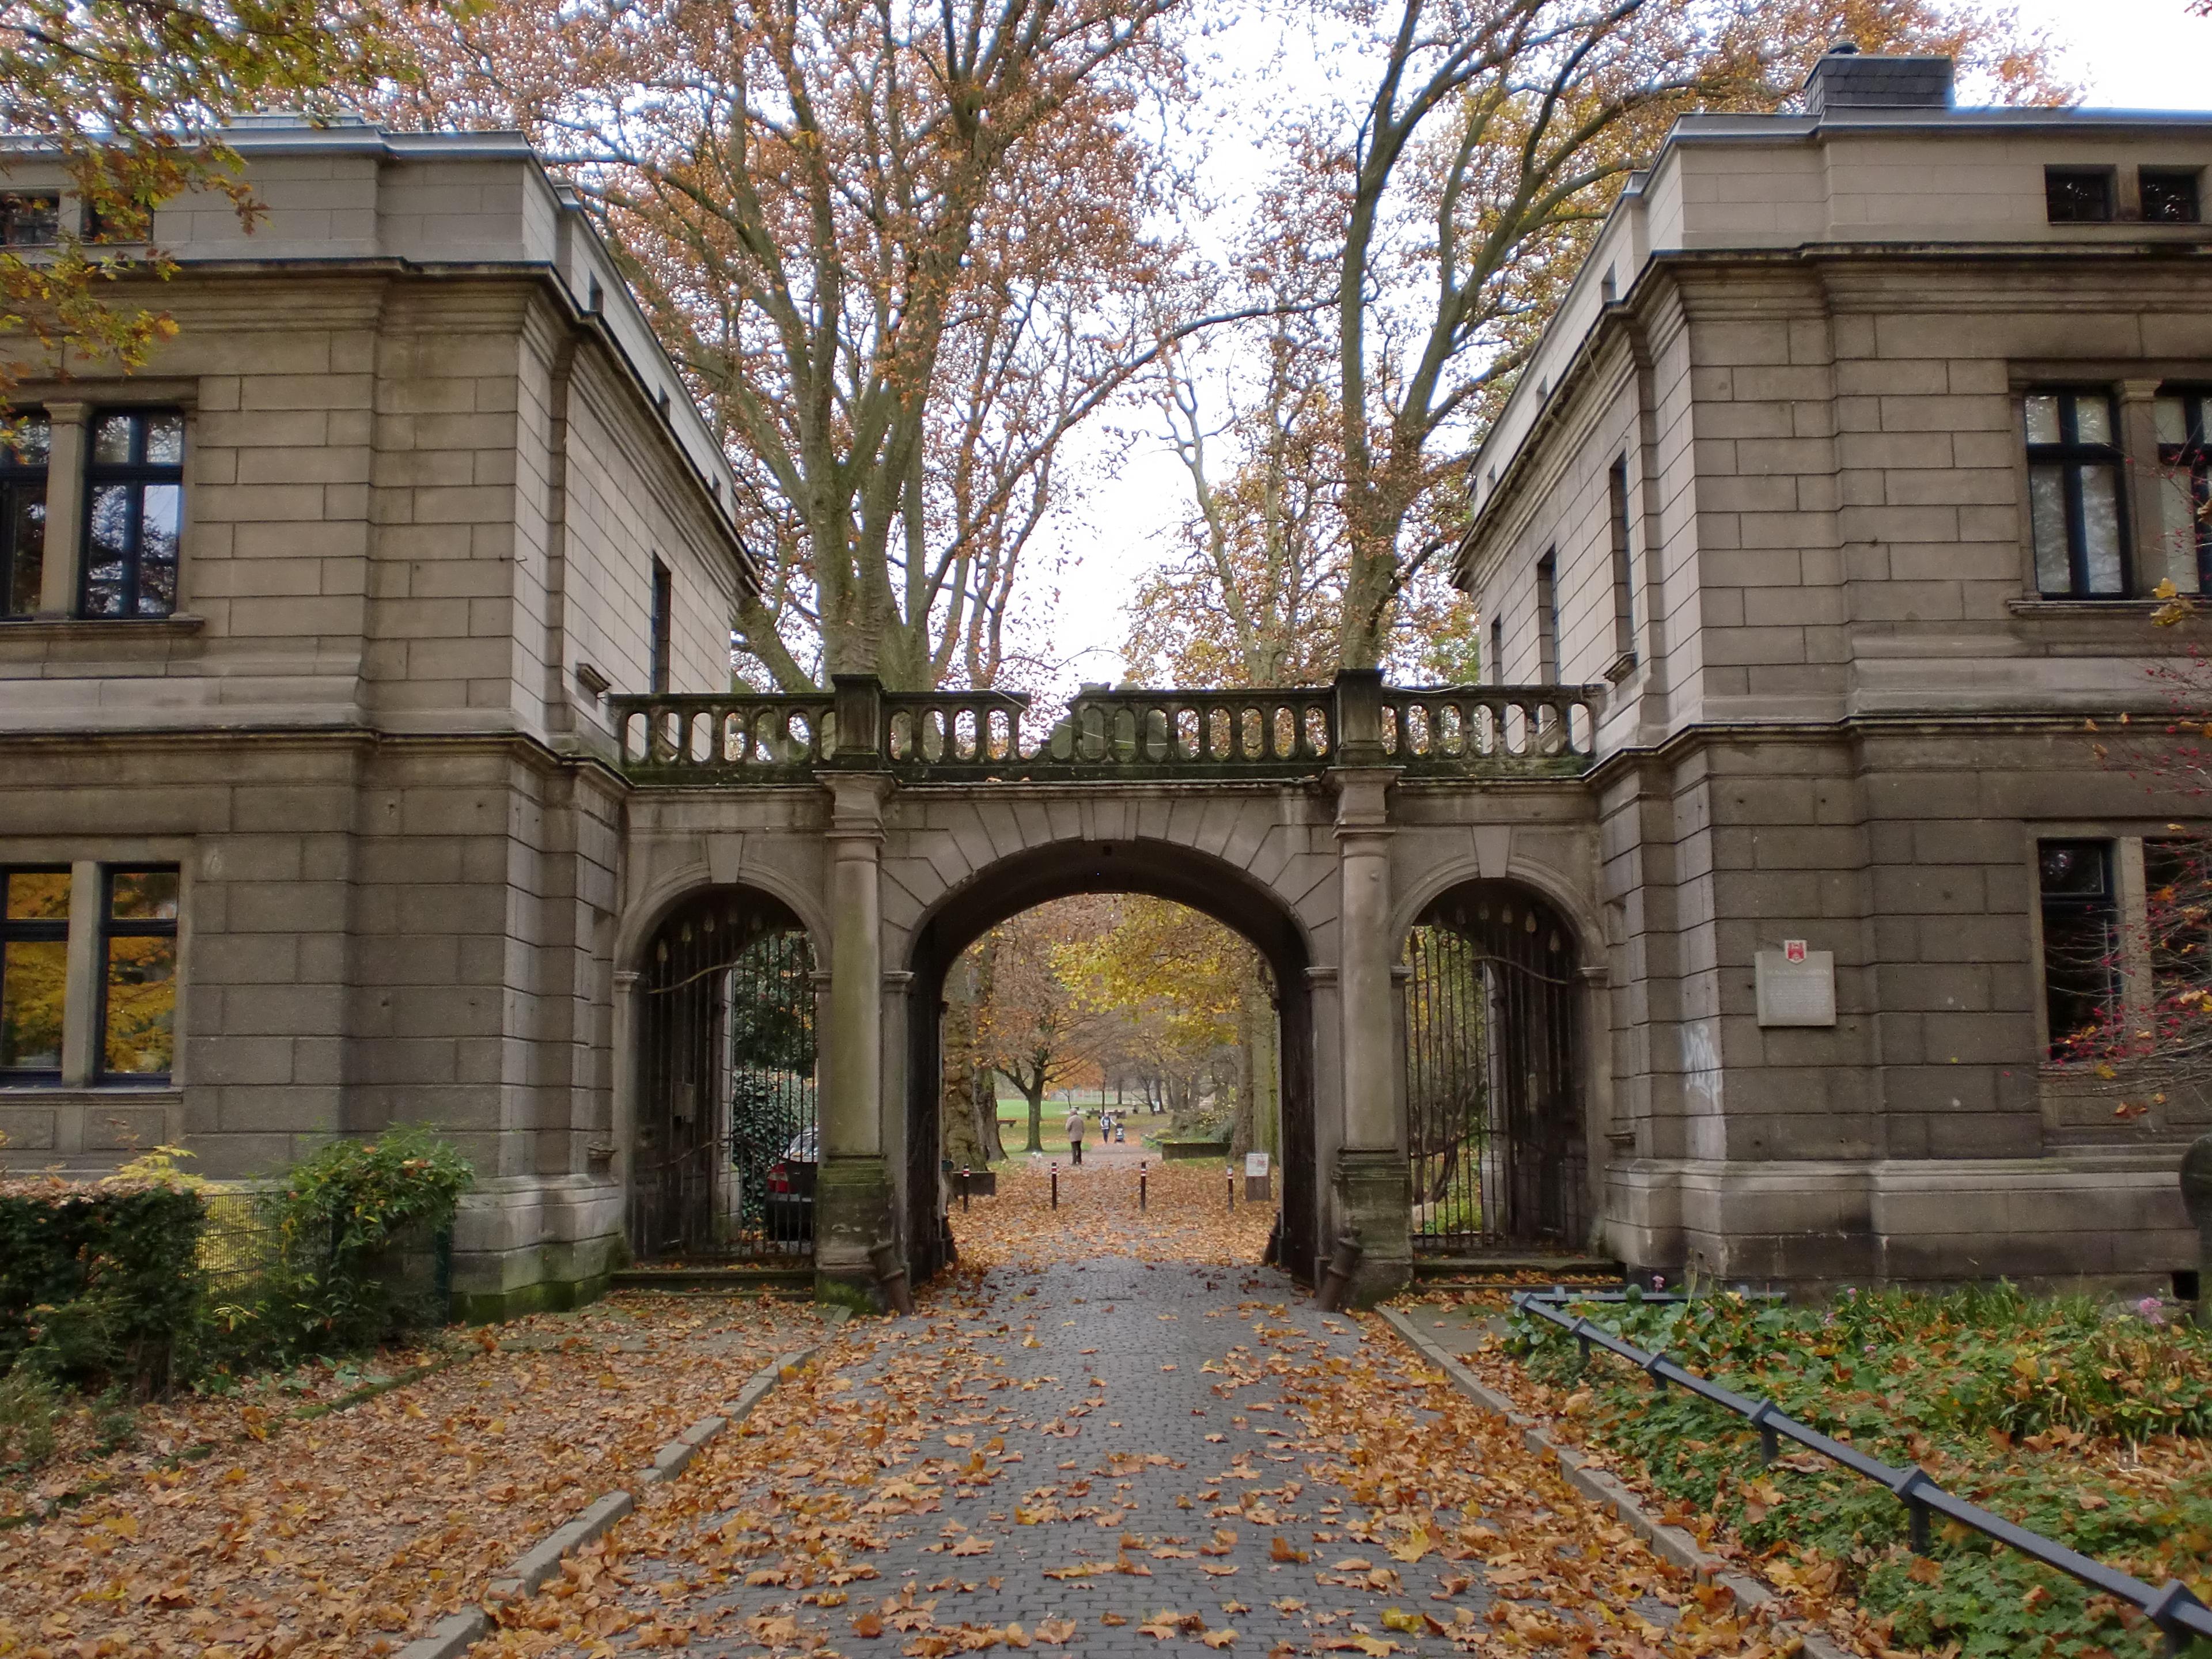 Cover image of this place Von-Alten-Garten